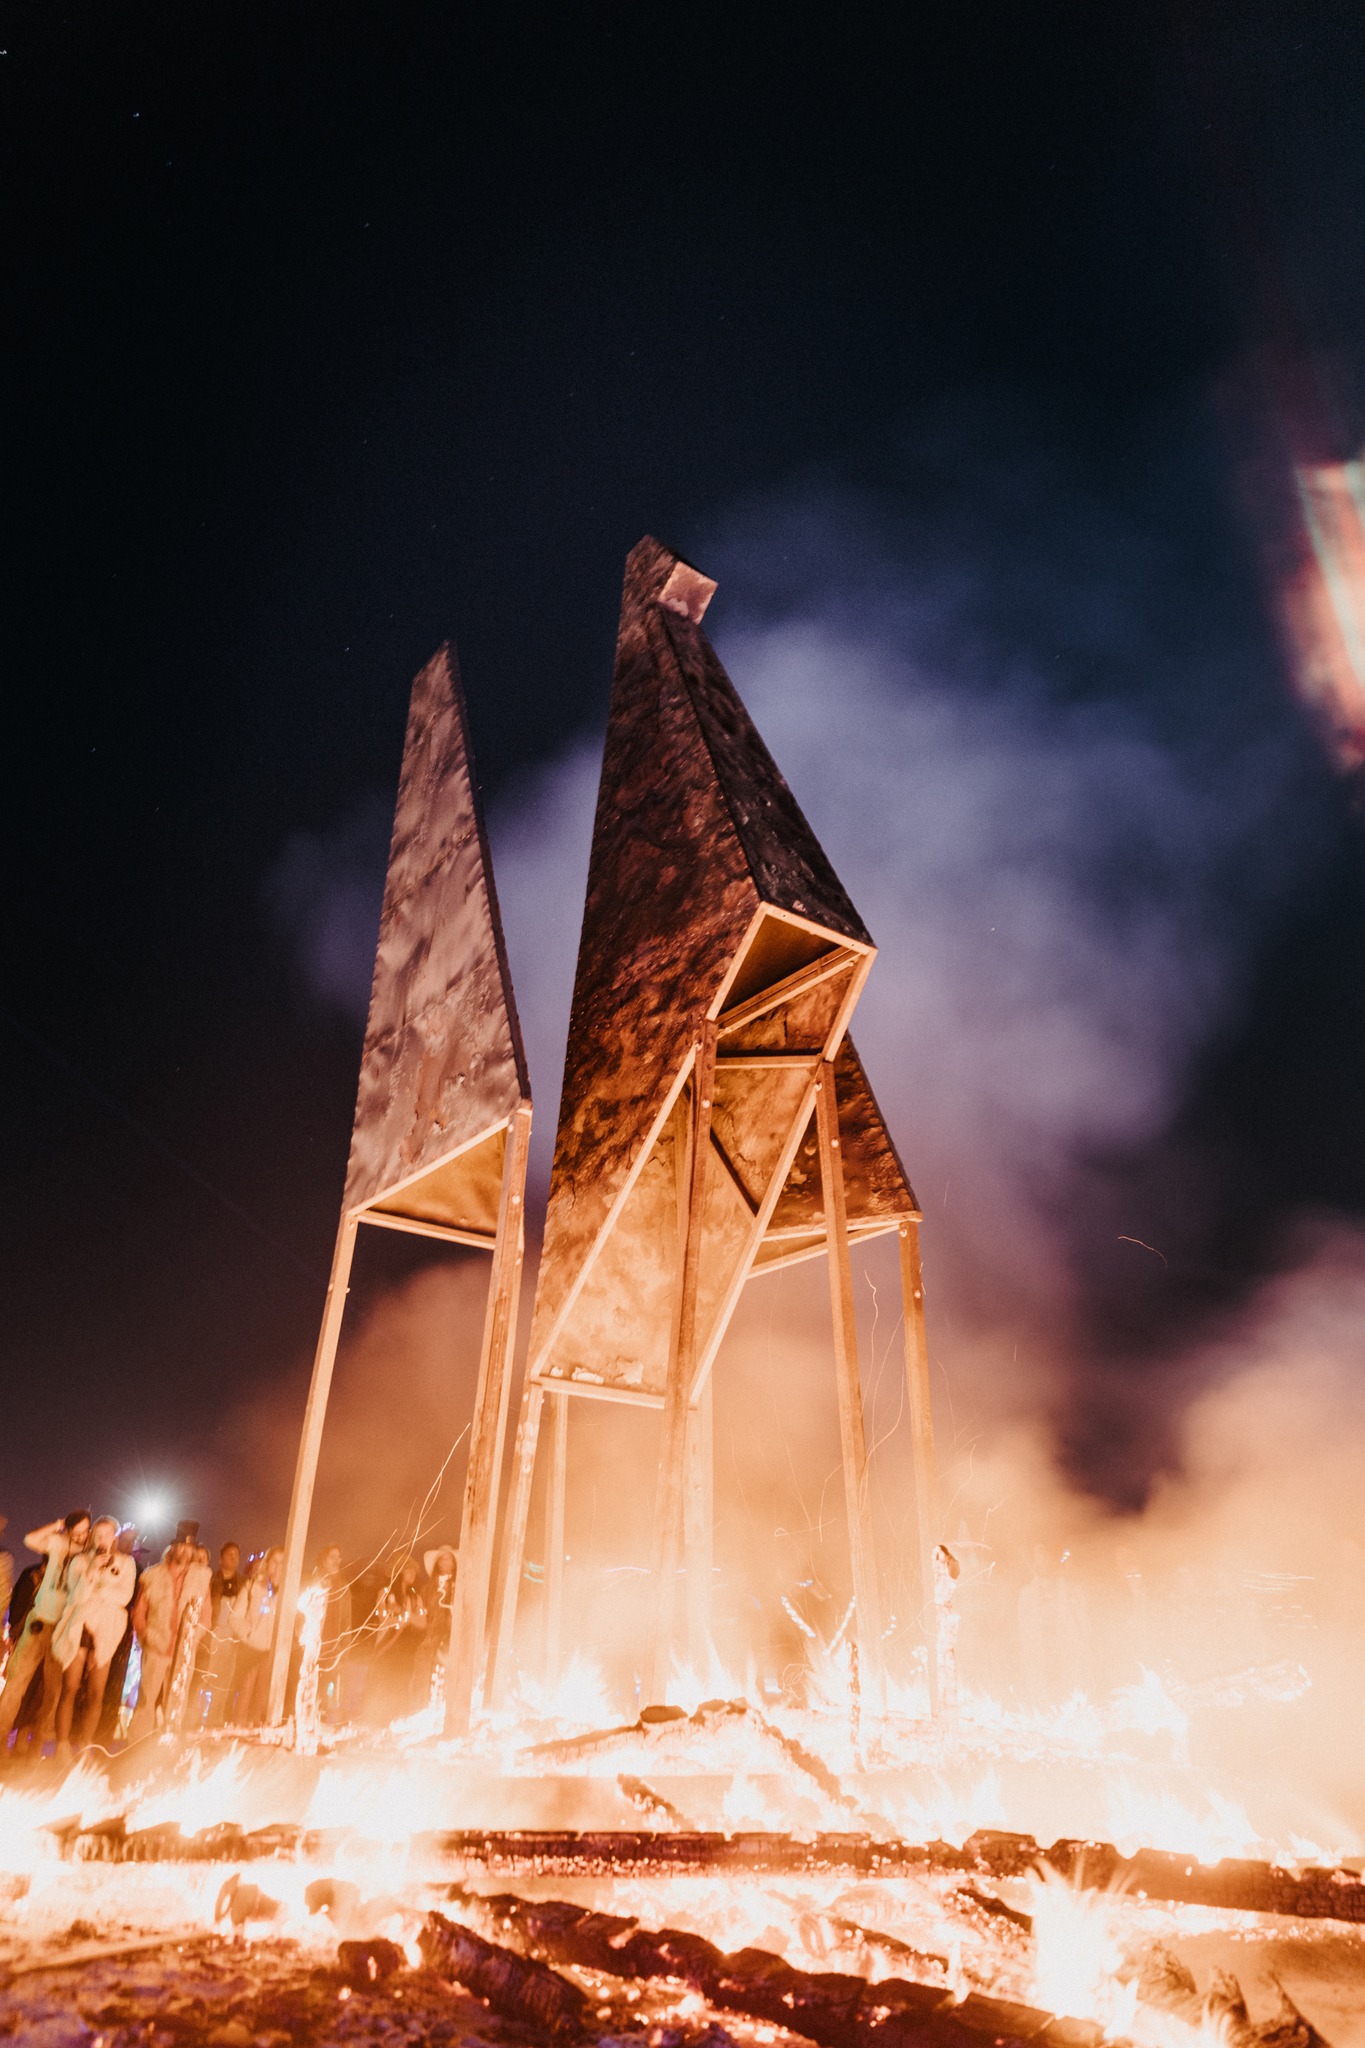 Родился Феникс: Украина на Burning Man устроила мощное огненное шоу (фото, видео) — фото